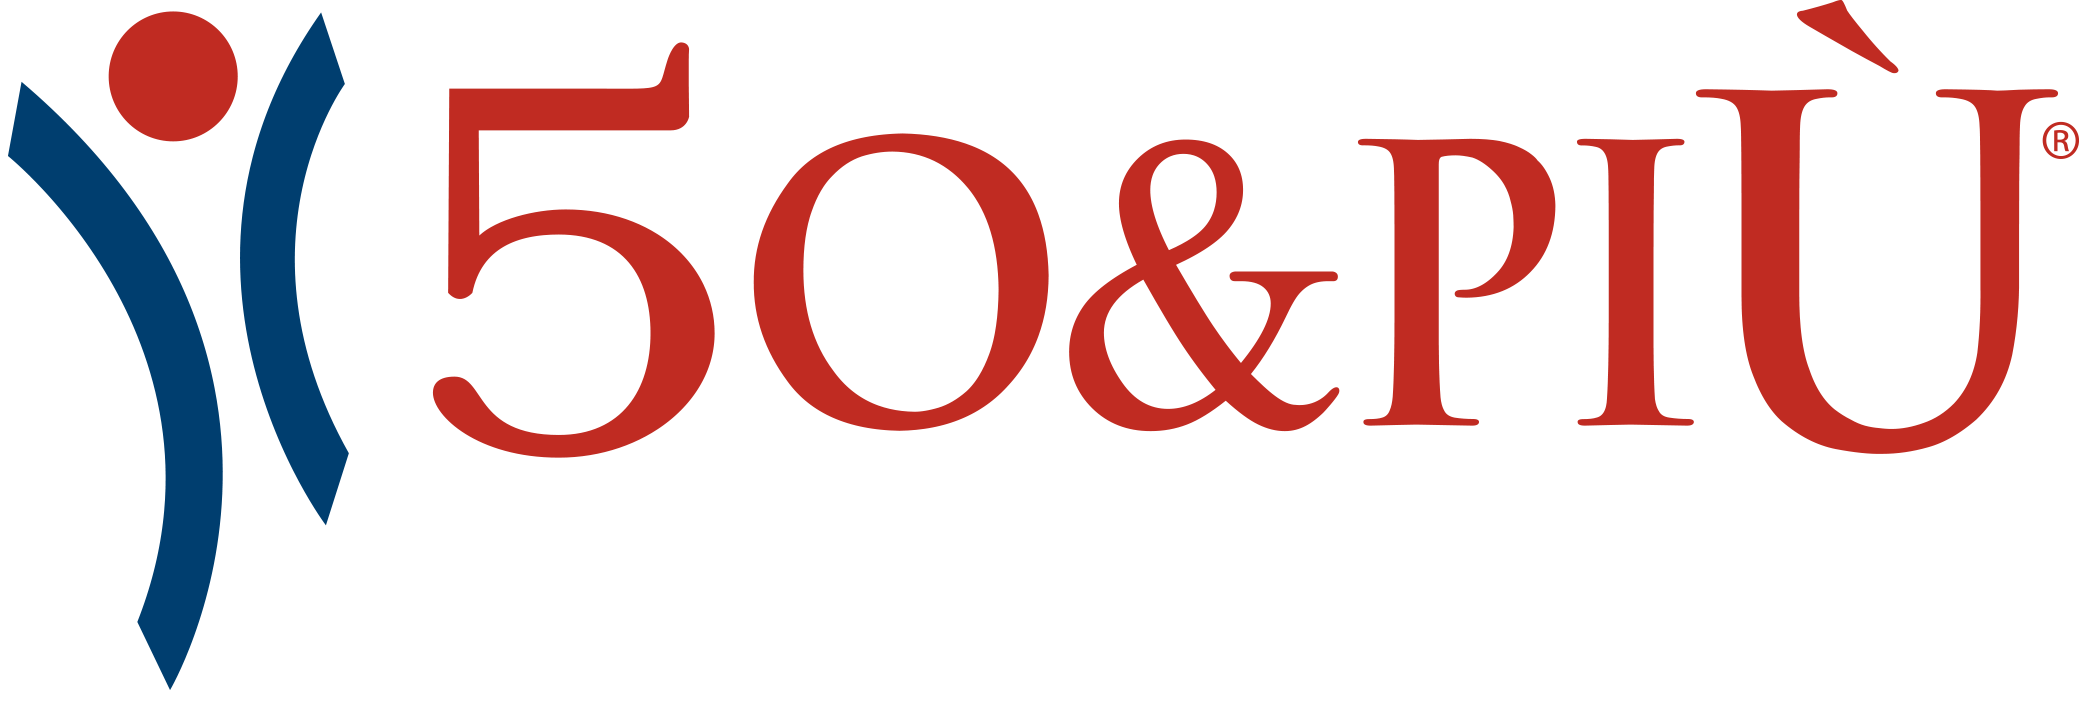 Logo Sistema 50&Più